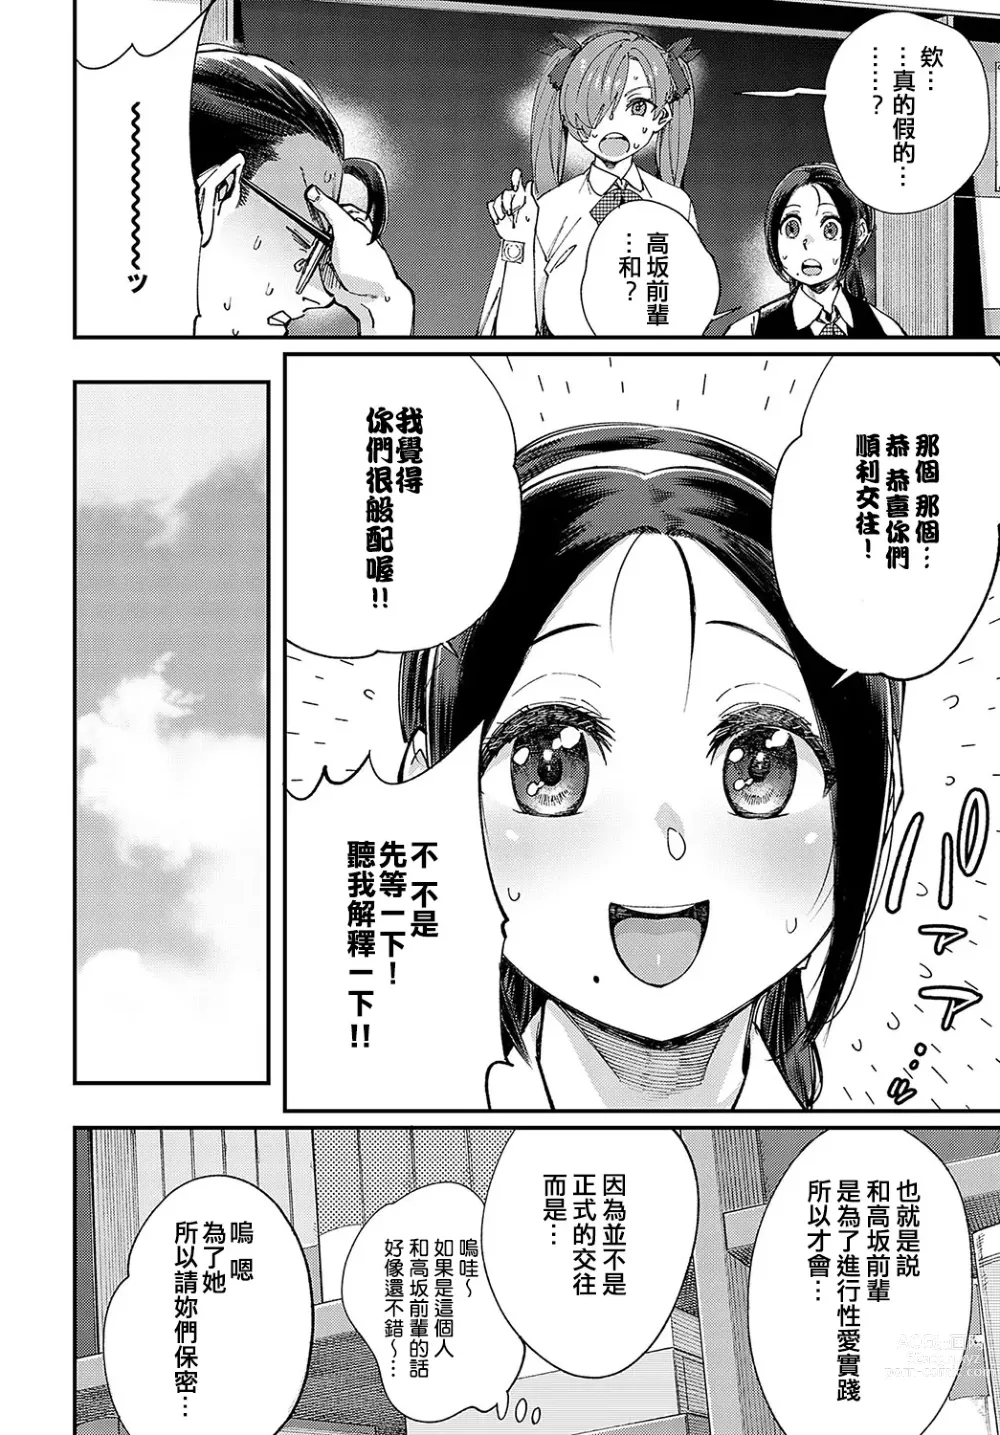 Page 4 of manga Majime wa Yattemo Naoranai Ch. 2